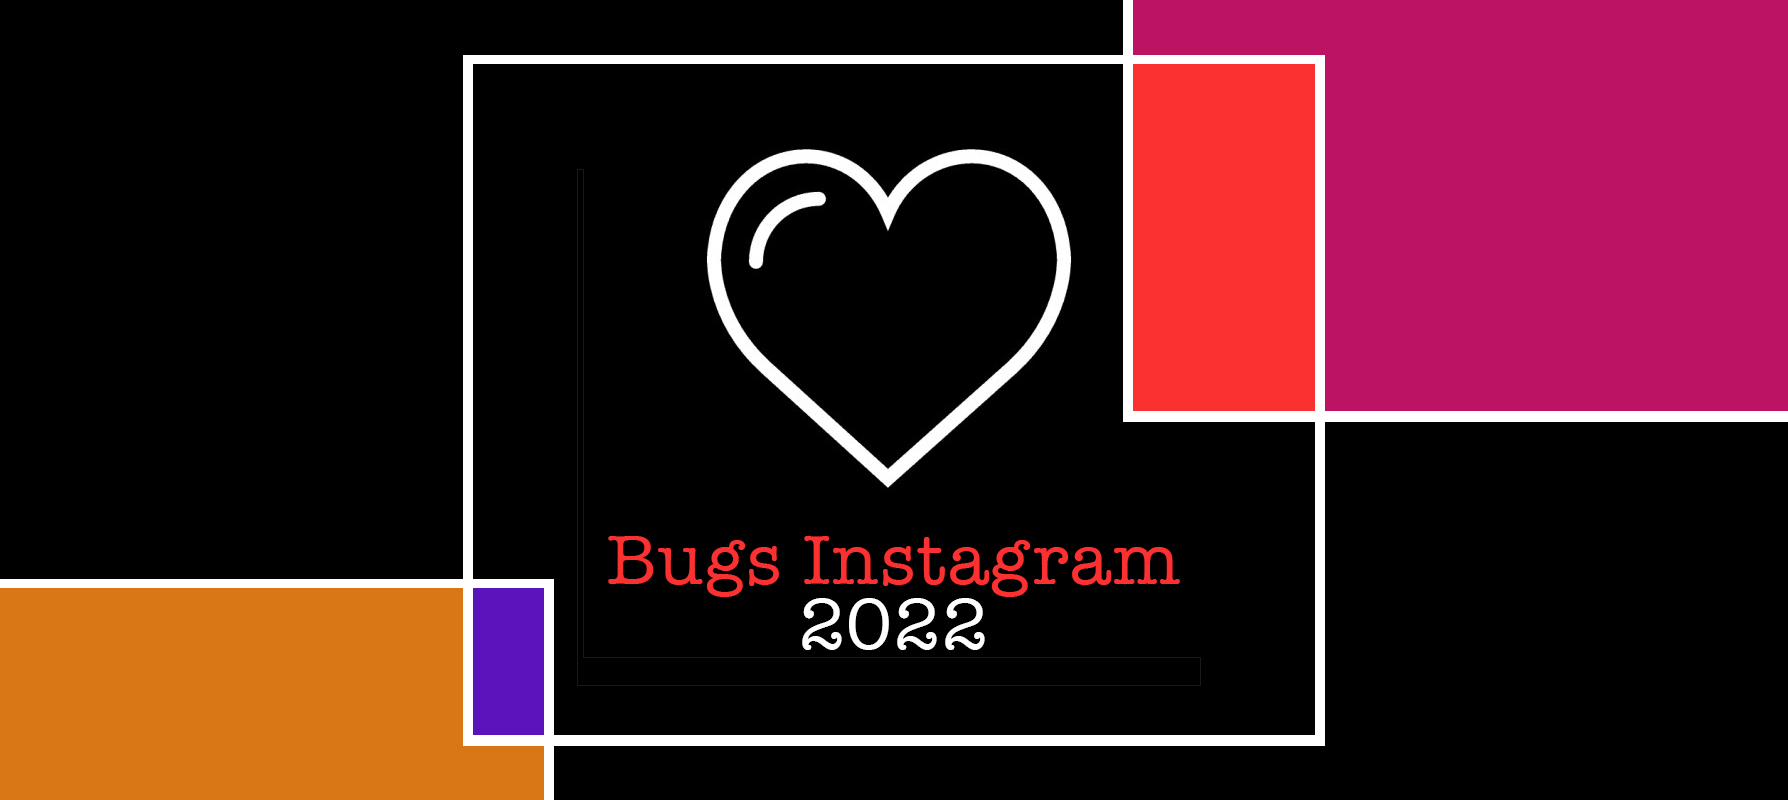 Instagram-Insekto 2022: 10 Oftaj Instagram-Problemoj kaj Solvoj